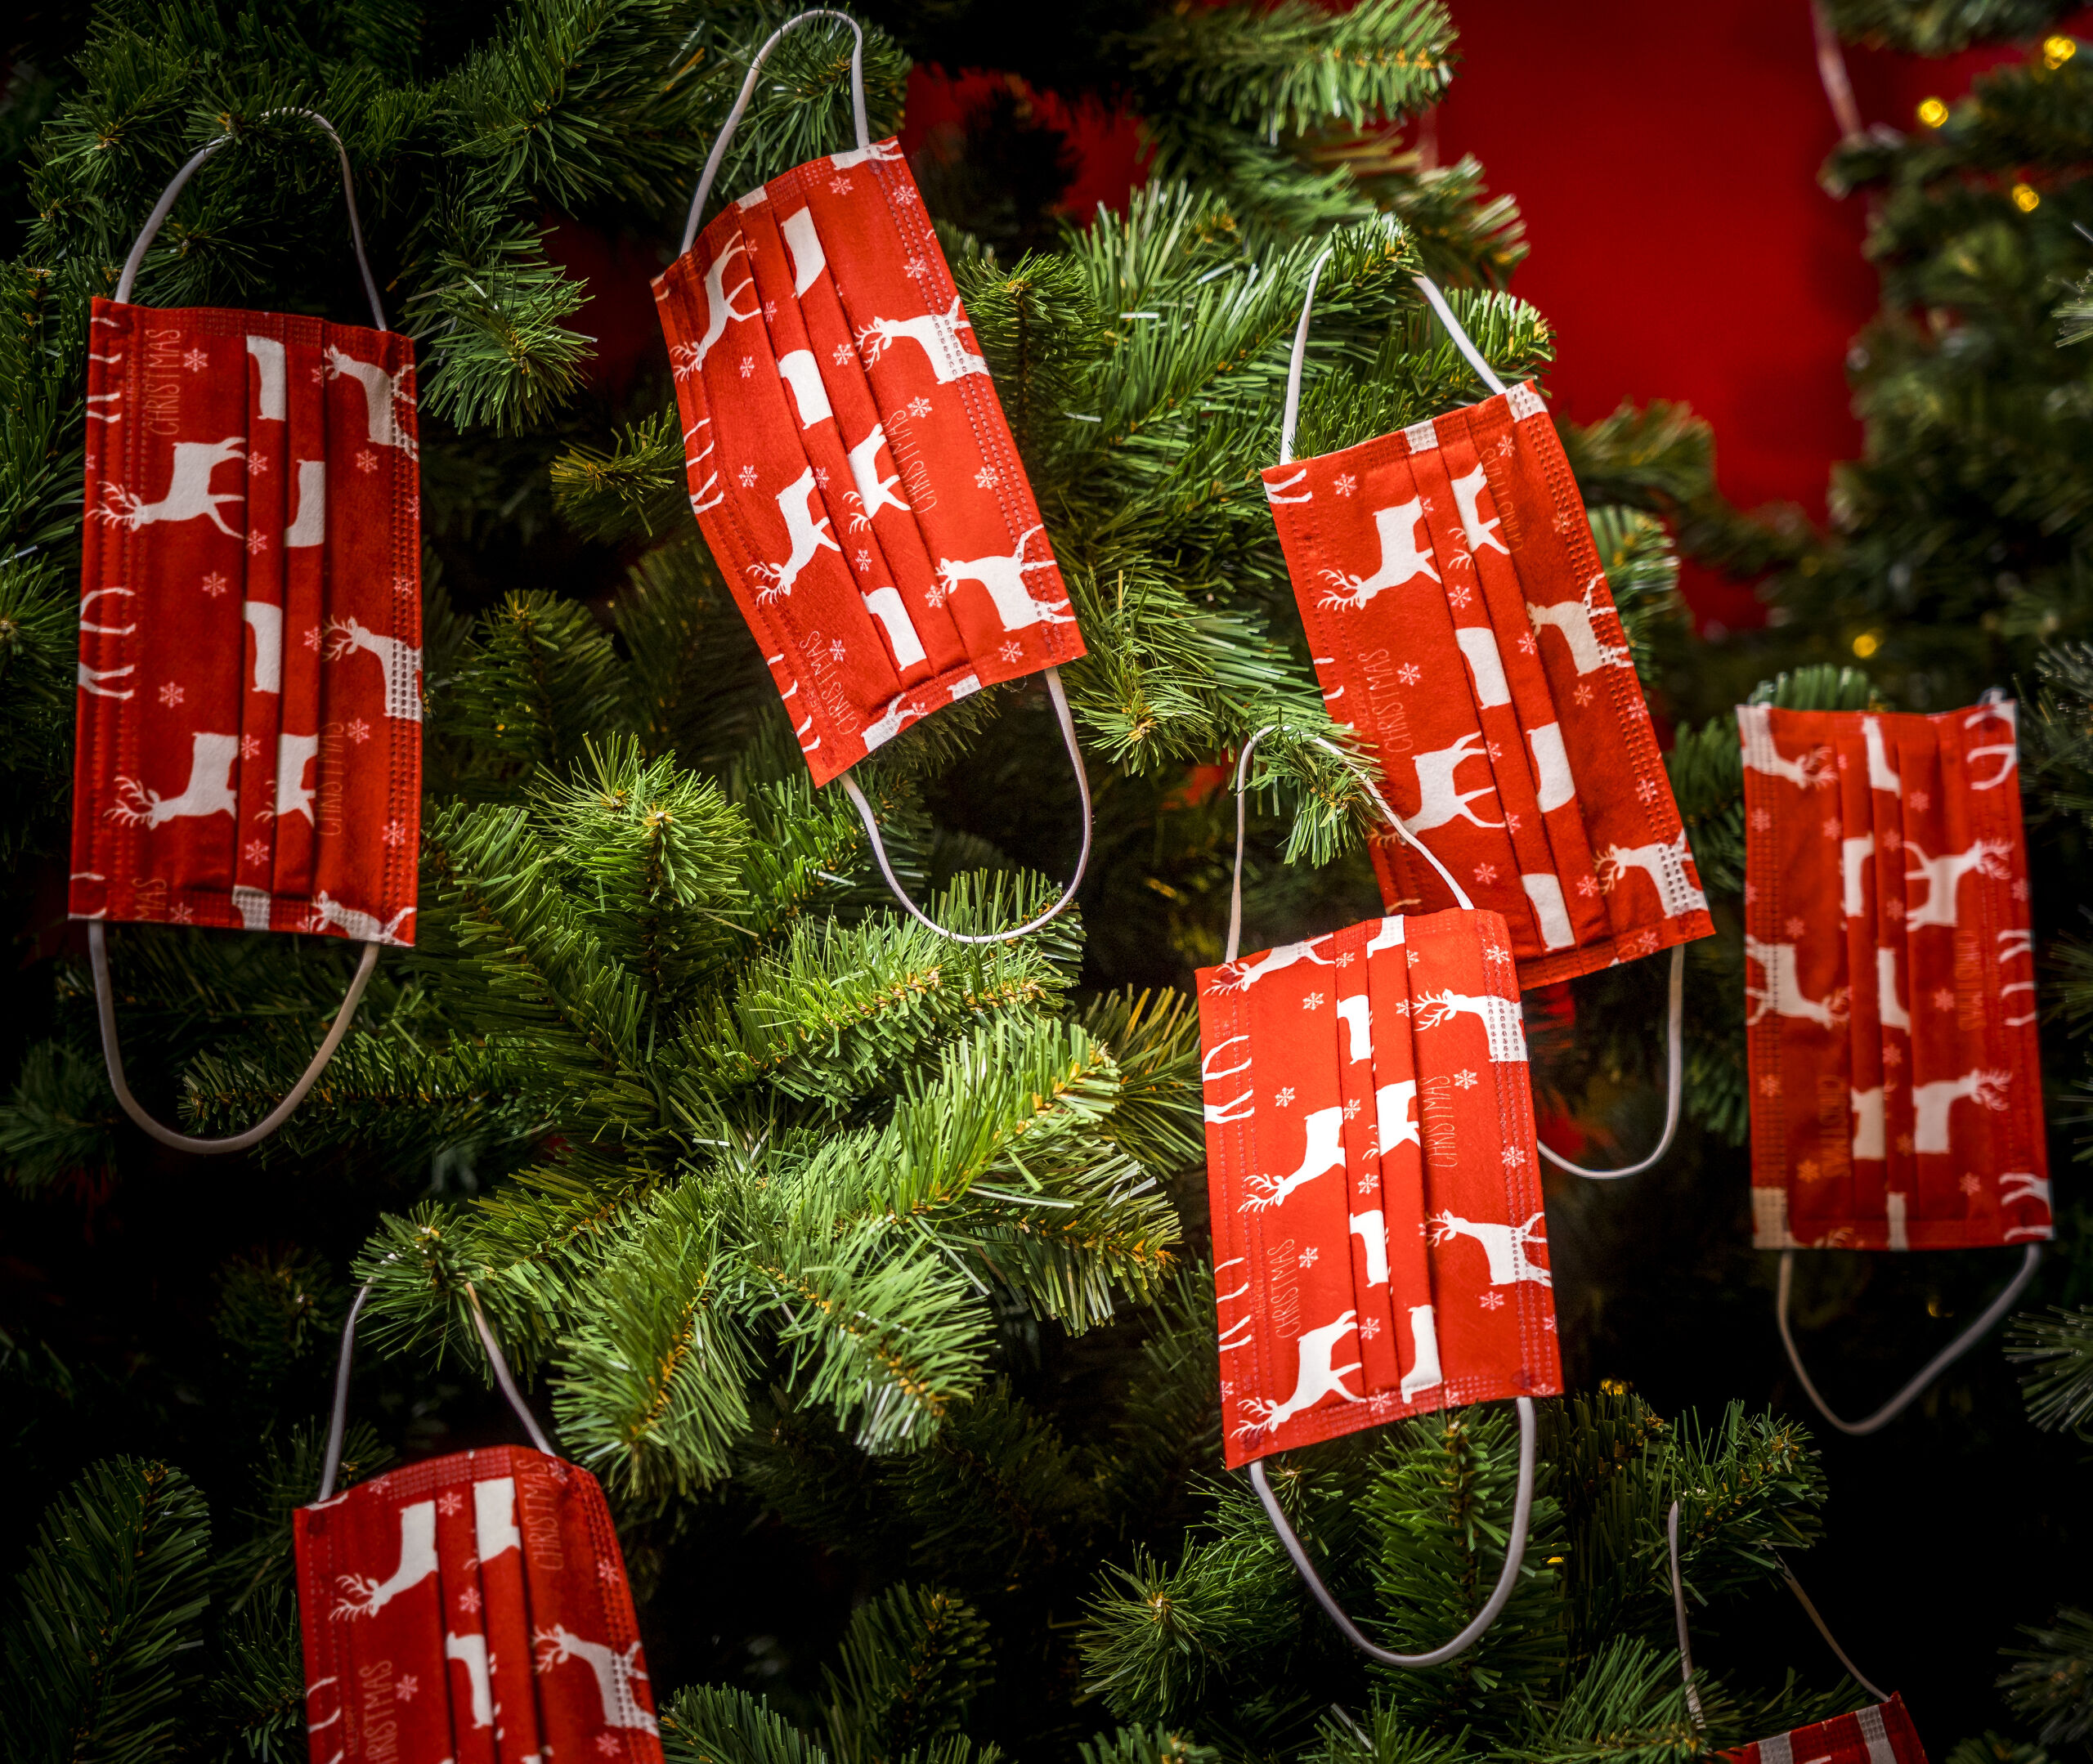 DEN HAAG - Mondkapjes in een kerstboom. Tijdens de feestdagen spelen veel ondernemers in op het verkopen van kerstartikelen die inhaken op het coronavirus. ANP XTRA LEX VAN LIESHOUT 